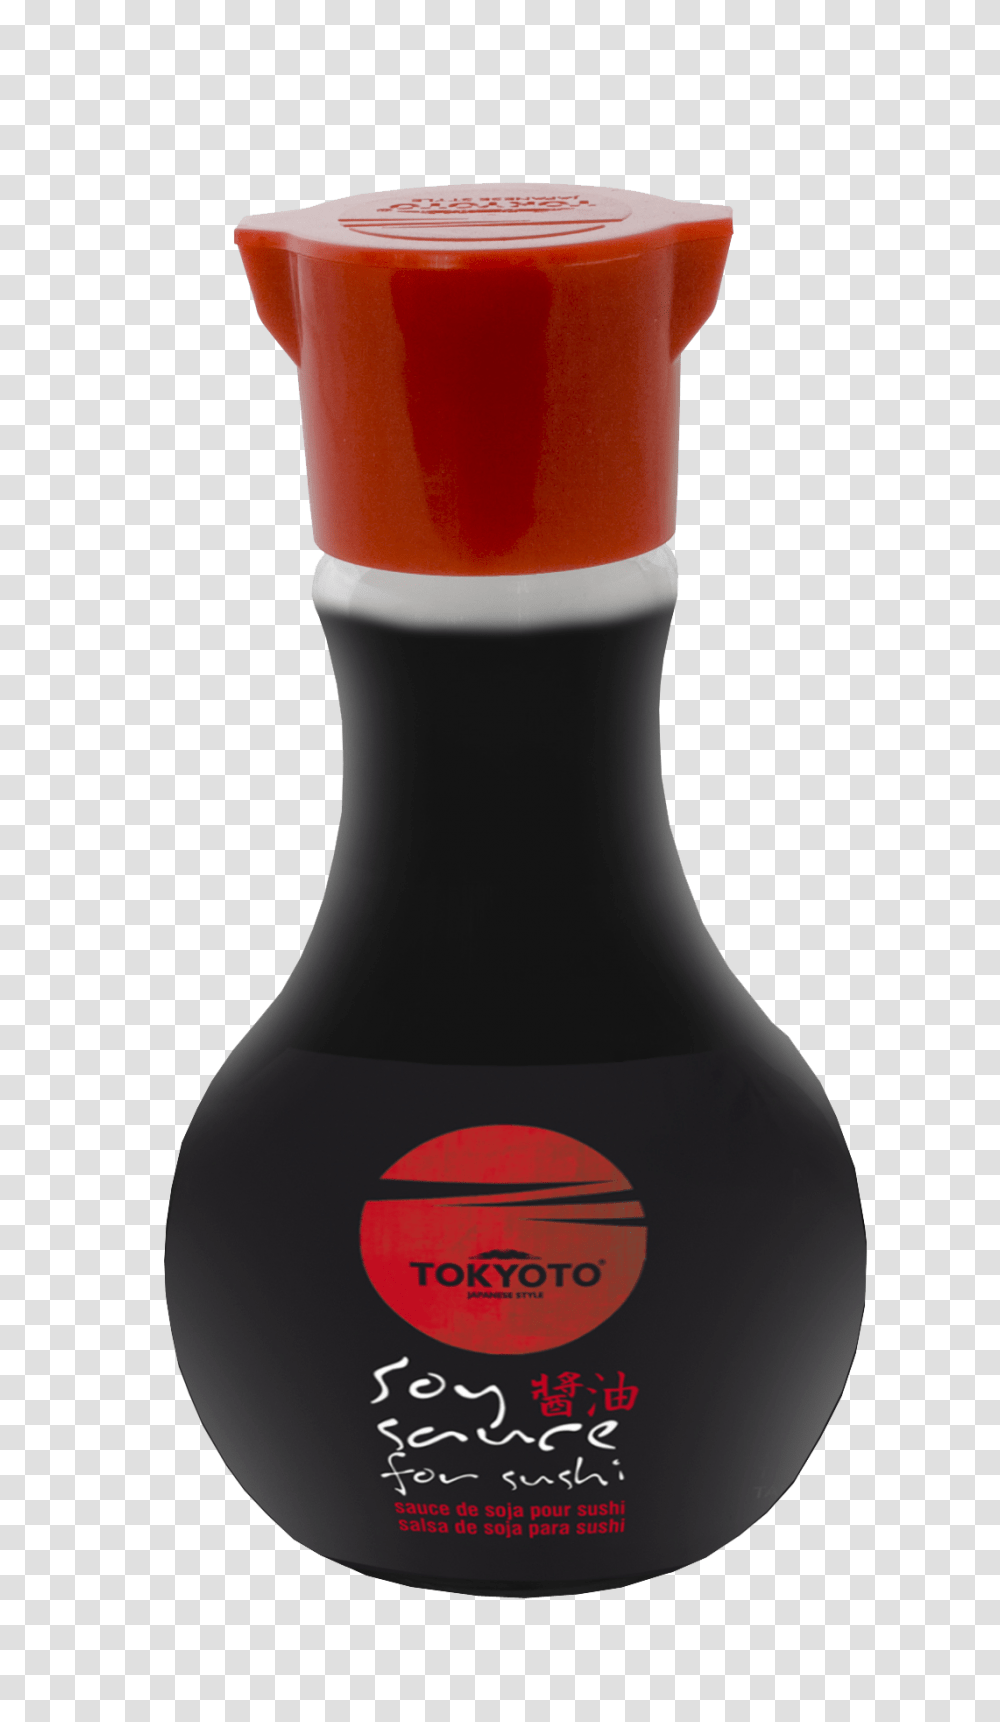 Soy Sauce For Sushi Ml Tokyoto, Bottle, Alcohol, Beverage, Label Transparent Png